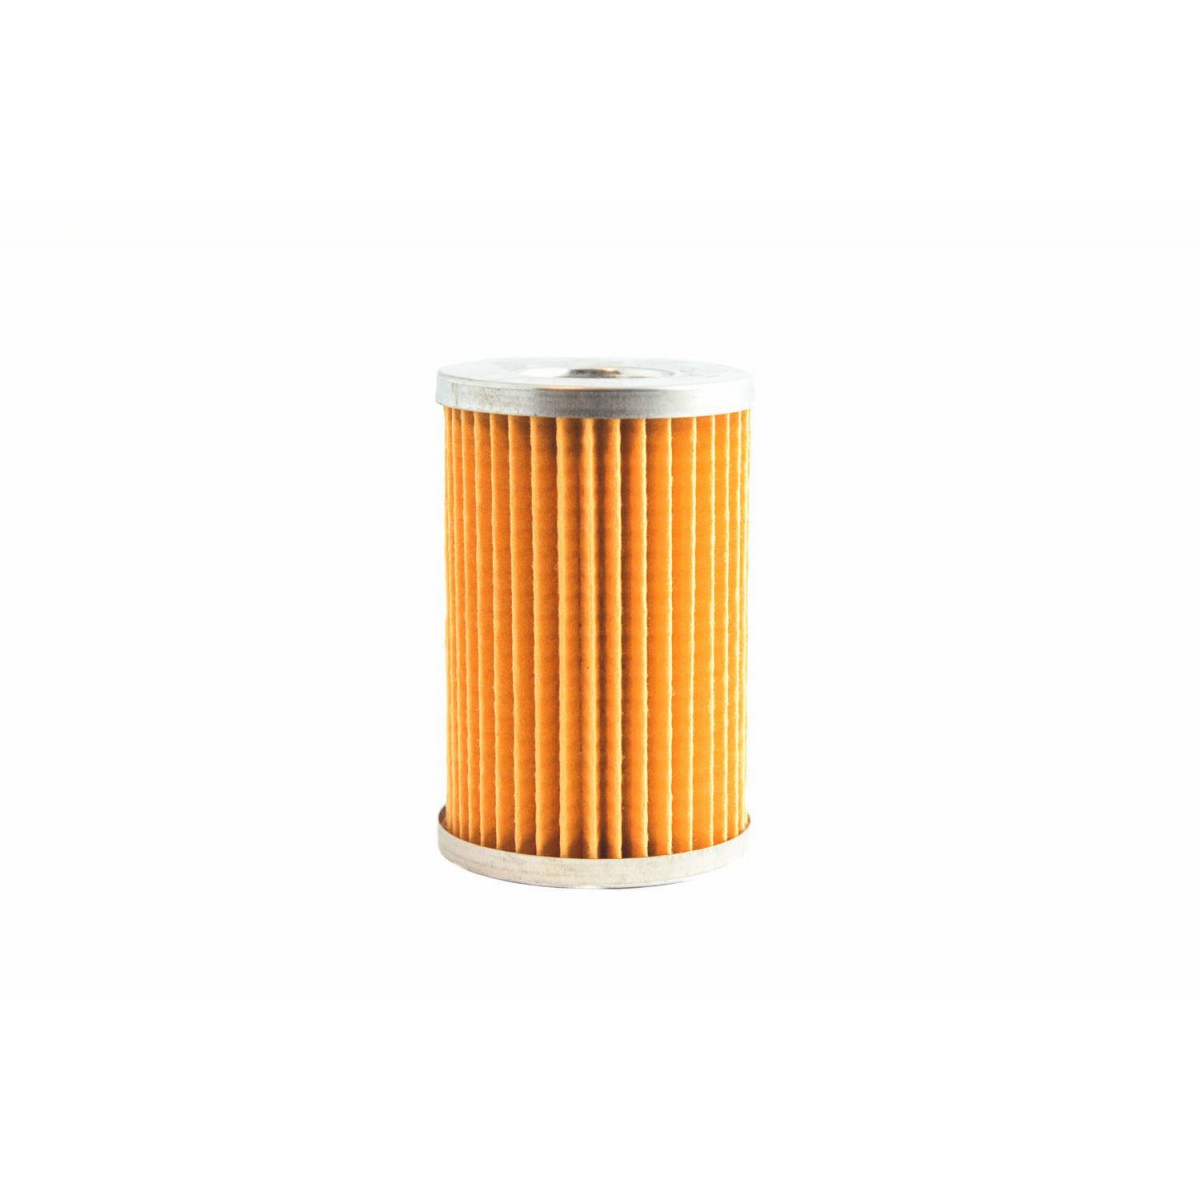 Oil filter Kubota L1500